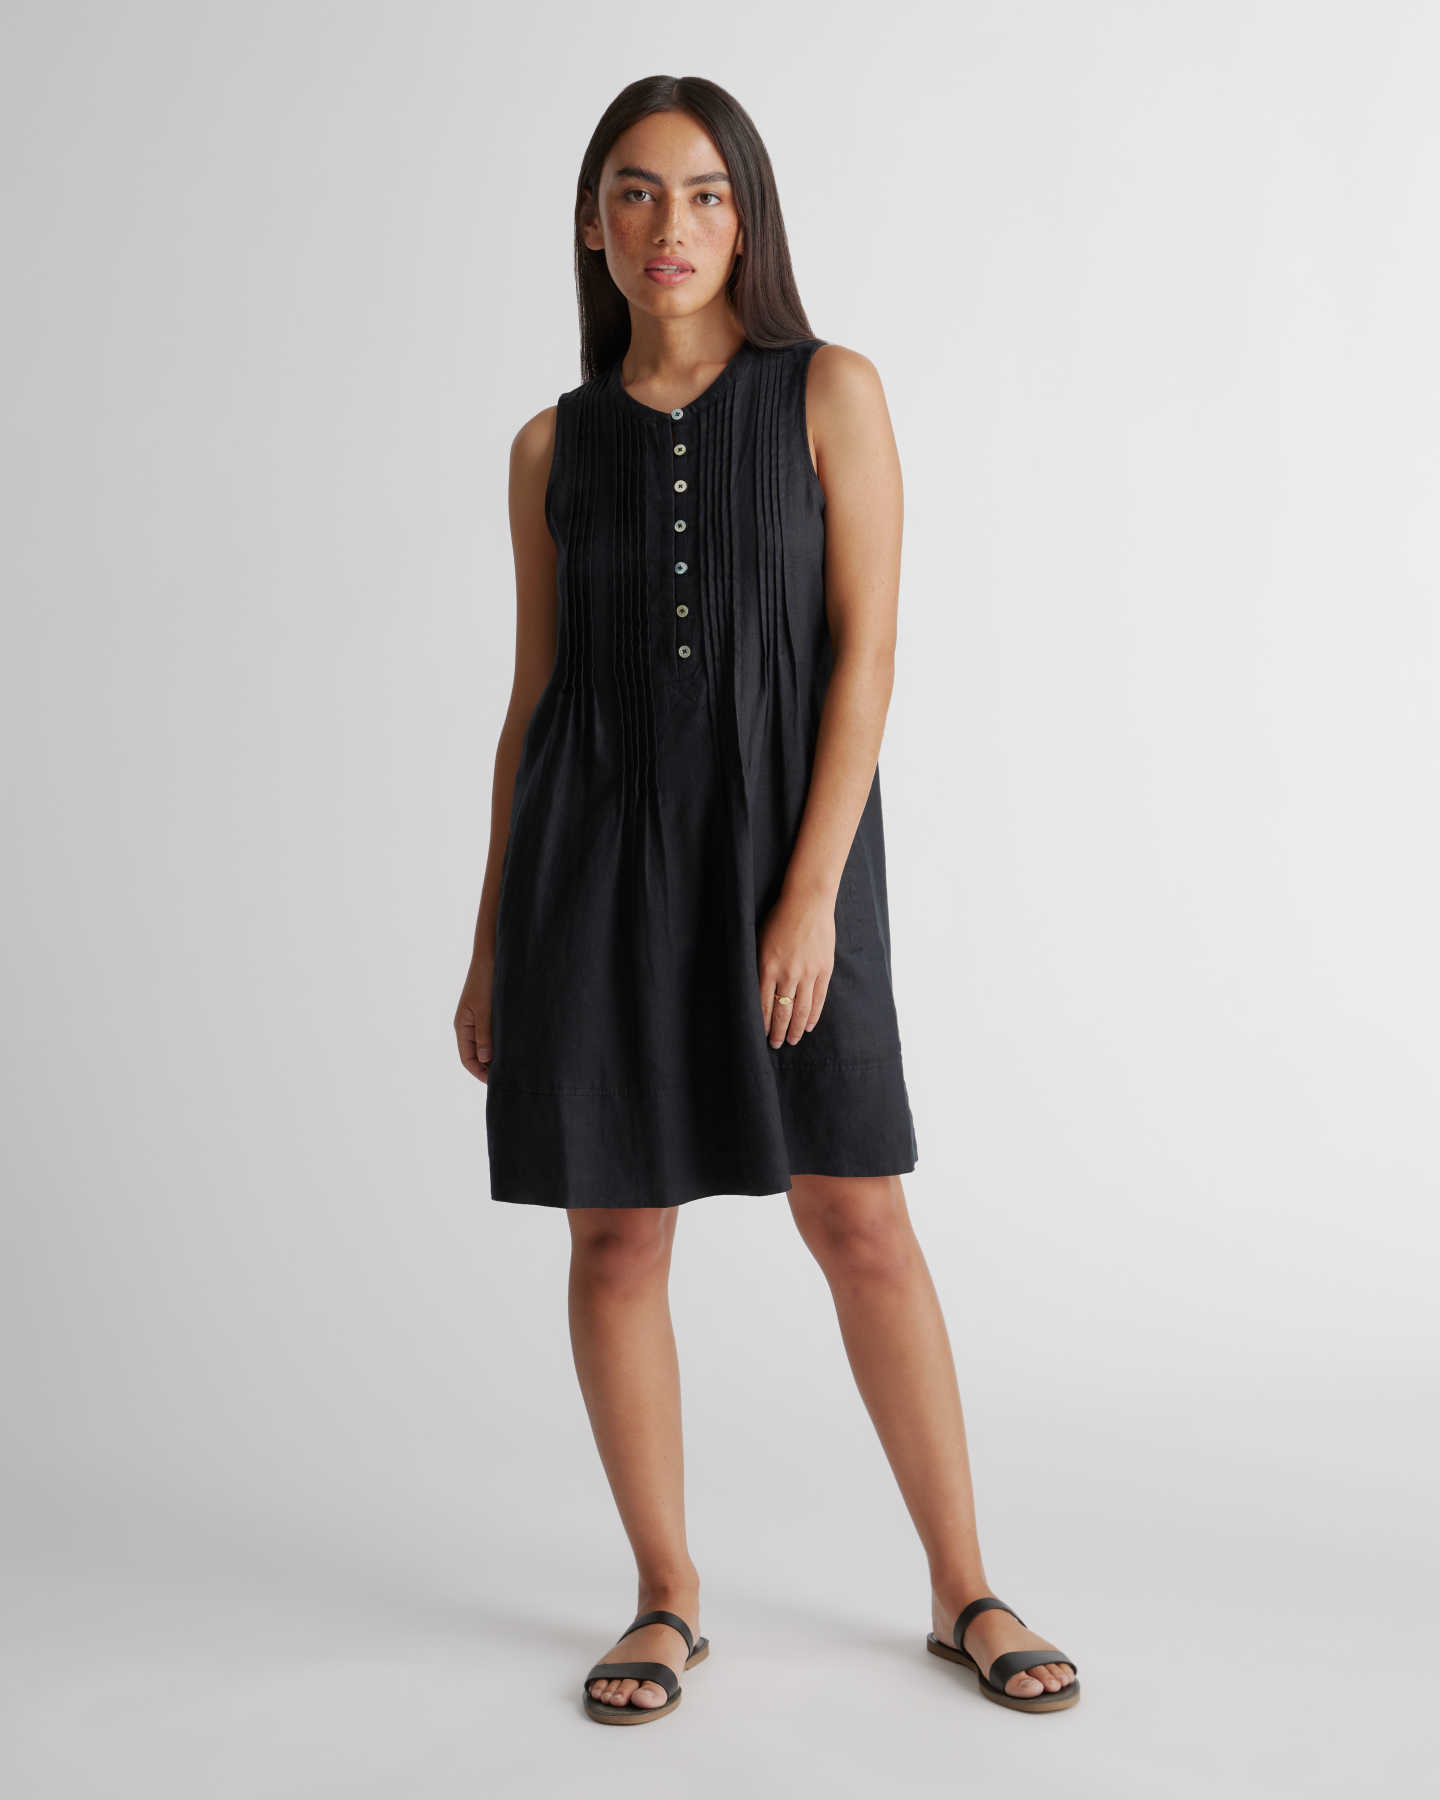 100% European Linen Sleeveless Swing Dress - Black